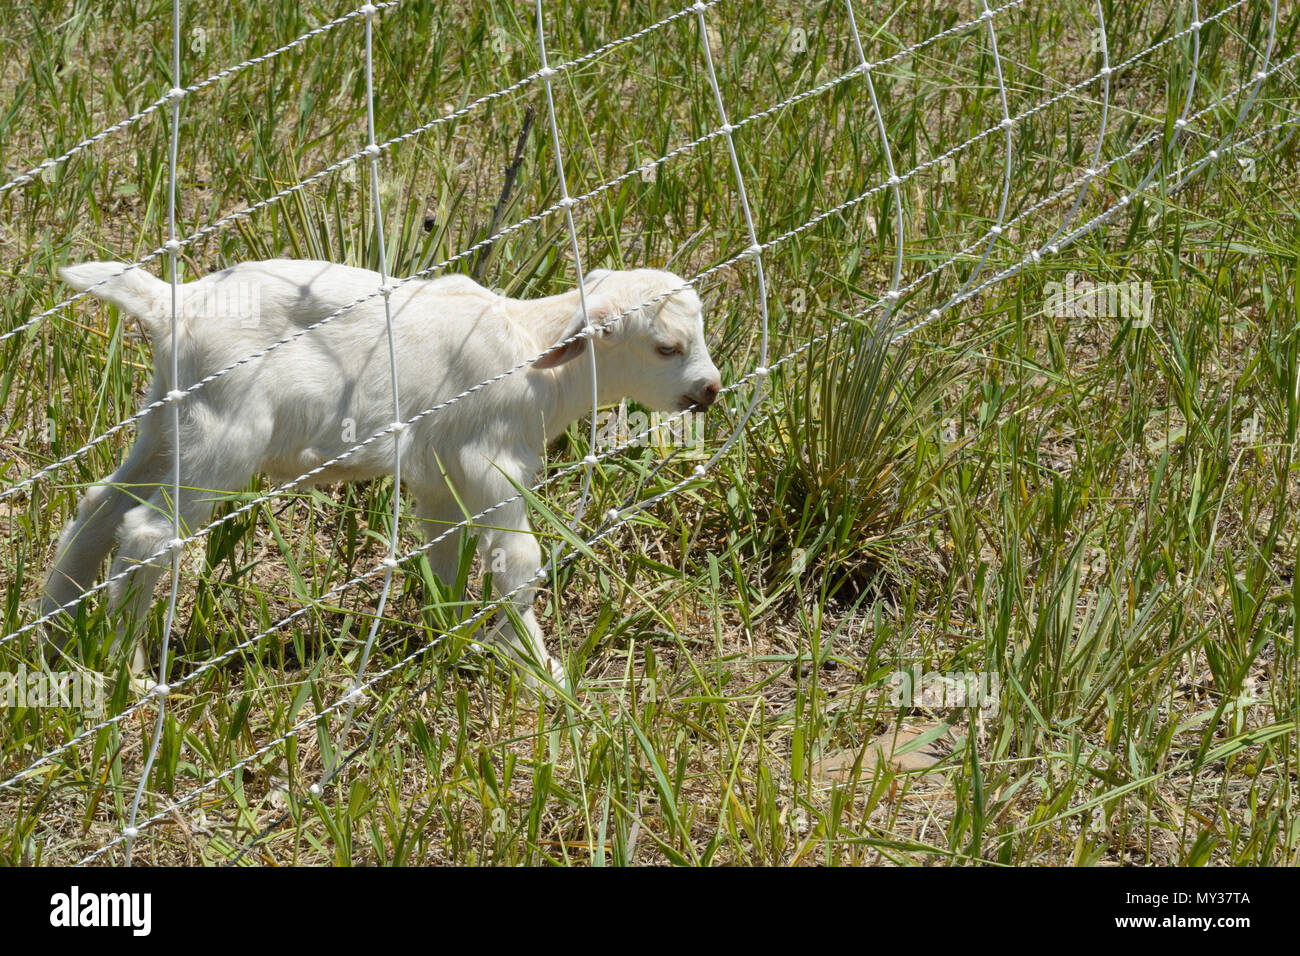 Neugeborene weiße Baby goat kid Kauen auf elektrischen Zaun am Rand der Weide Stockfoto